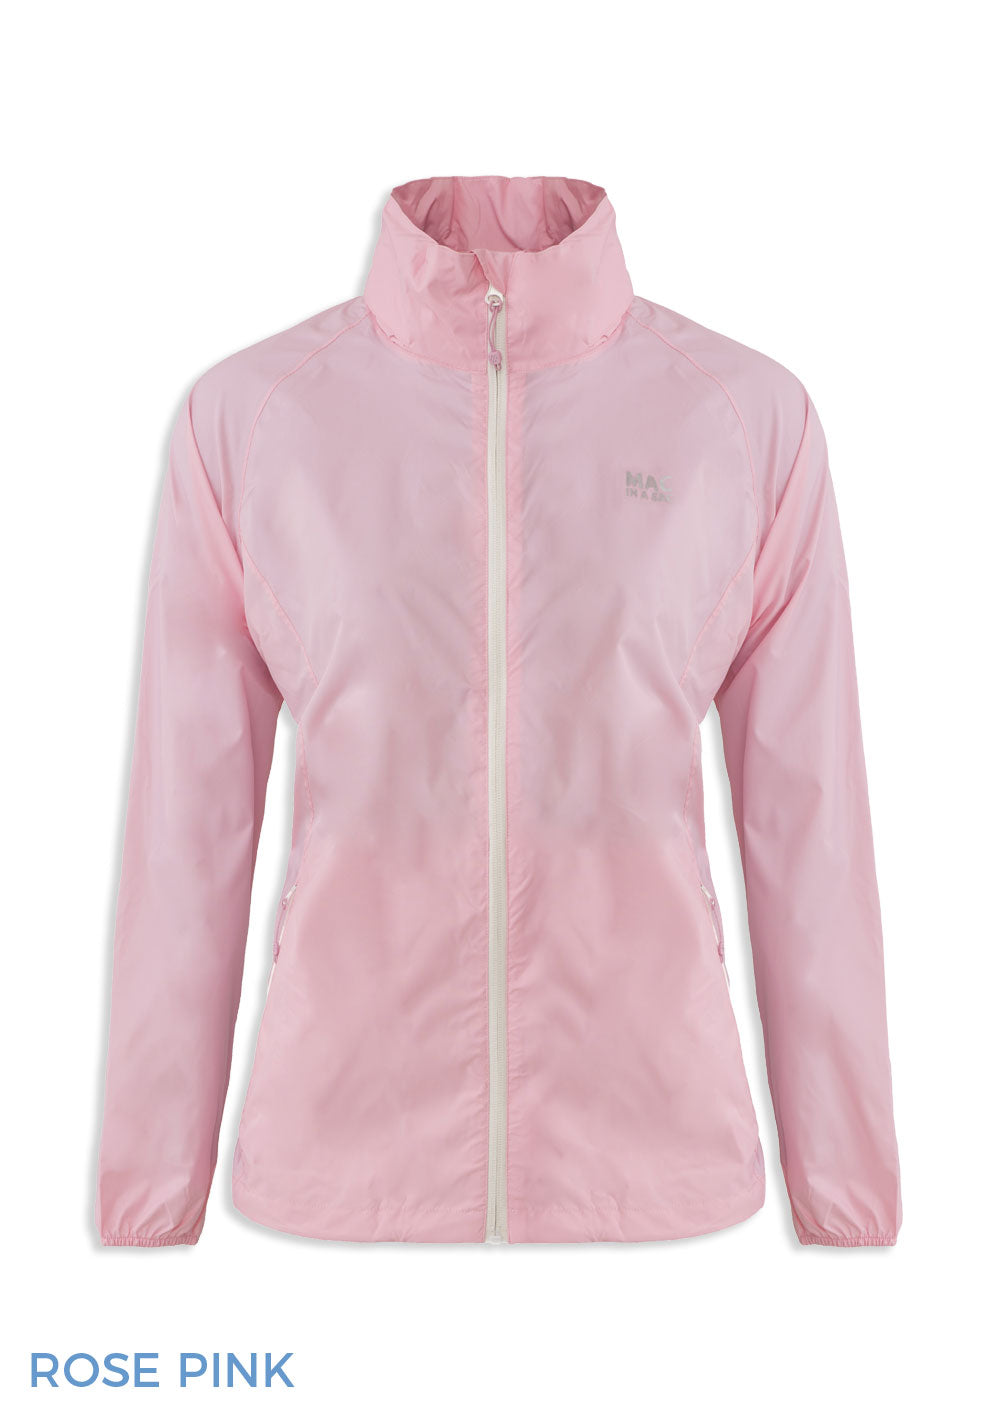 Rose Pink Packaway Waterproof Jacket by Lighthouse 